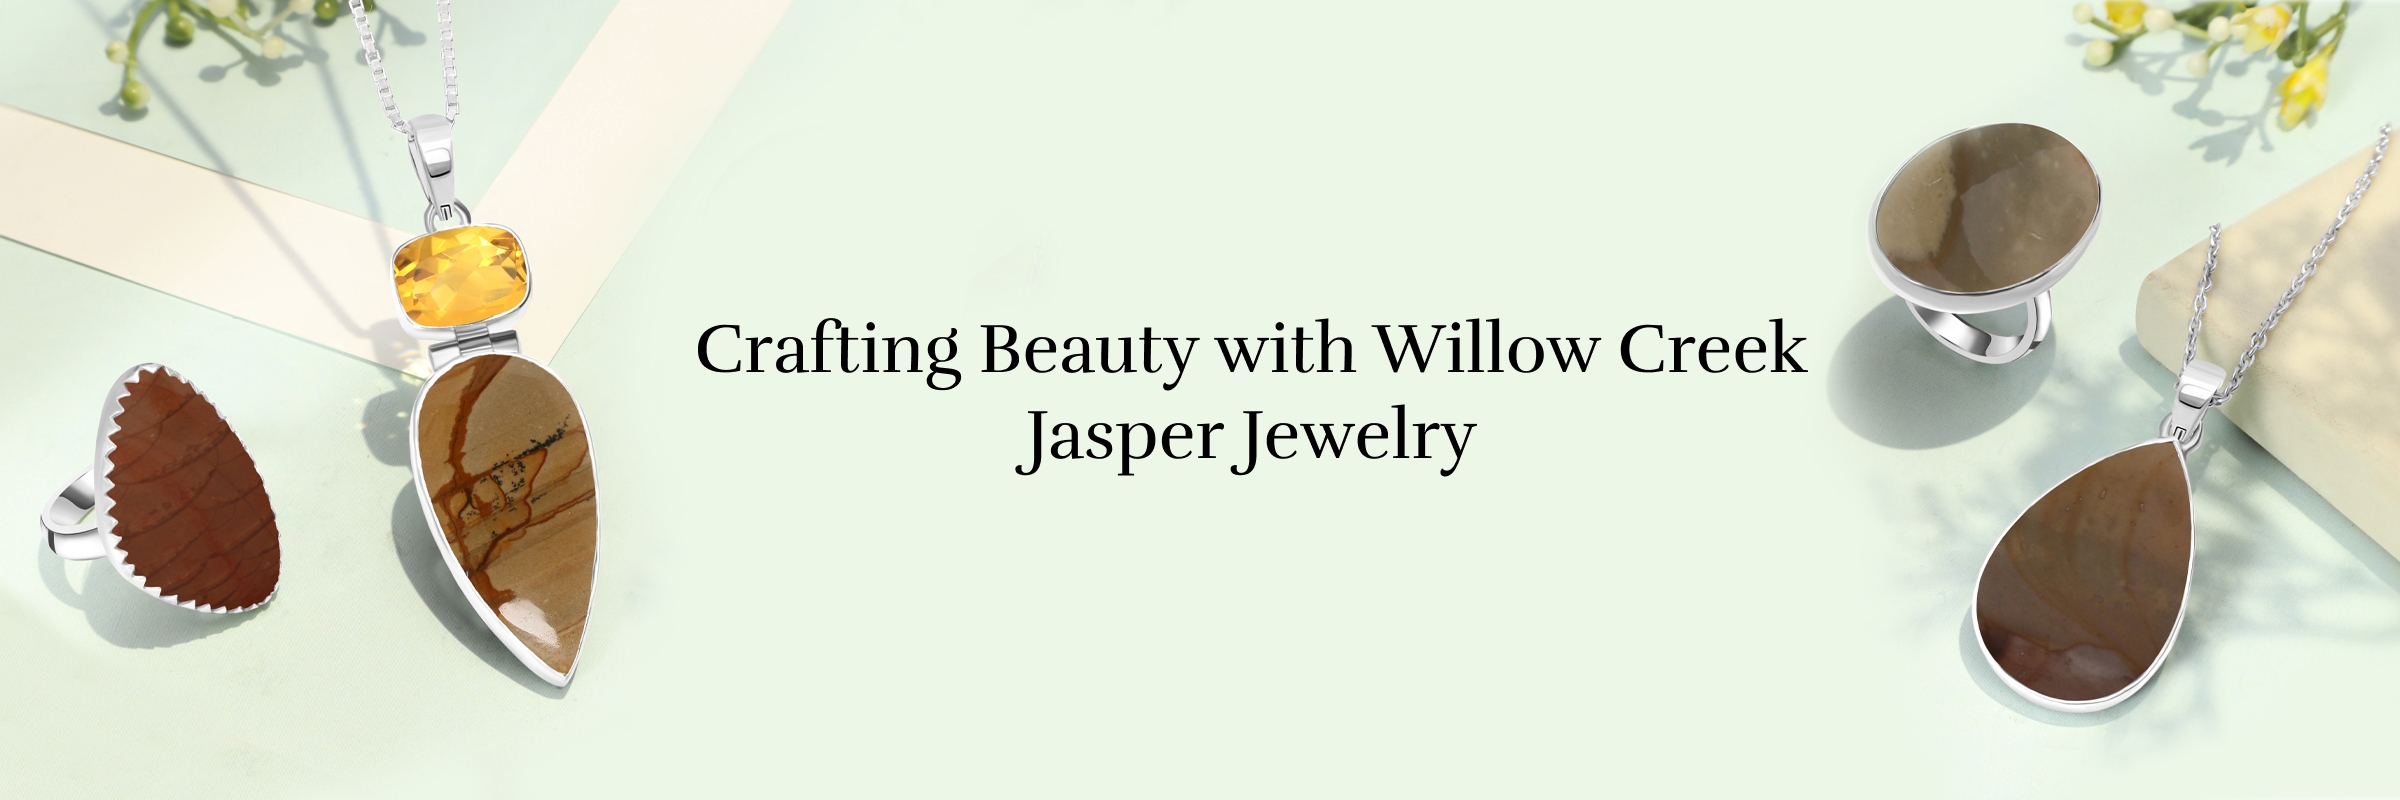 Willow Creek Jasper Jewelry